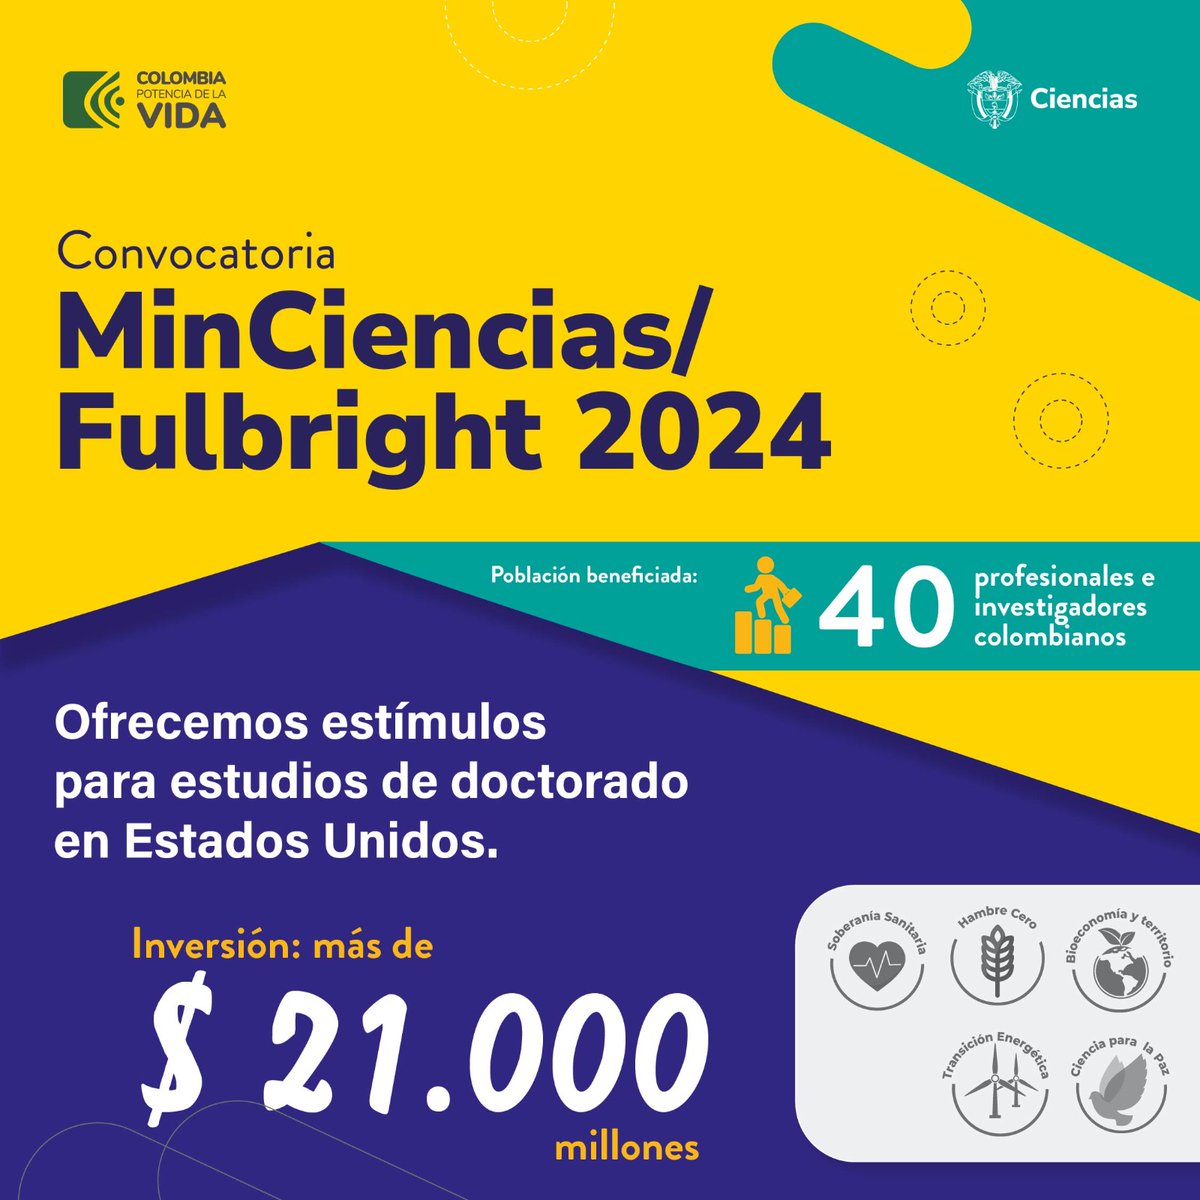 #Entérate I #MinCiencias en alianza con @FulbrightCol ha beneficiado a 605 profesionales colombianos en diversas áreas del conocimiento con sus estudios de posgrado en EE.UU ¡Ahora es tu oportunidad de participar! Inscríbete hasta el 6 de mayo🙋‍♀️📗minciencias.gov.co/sala_de_prensa…